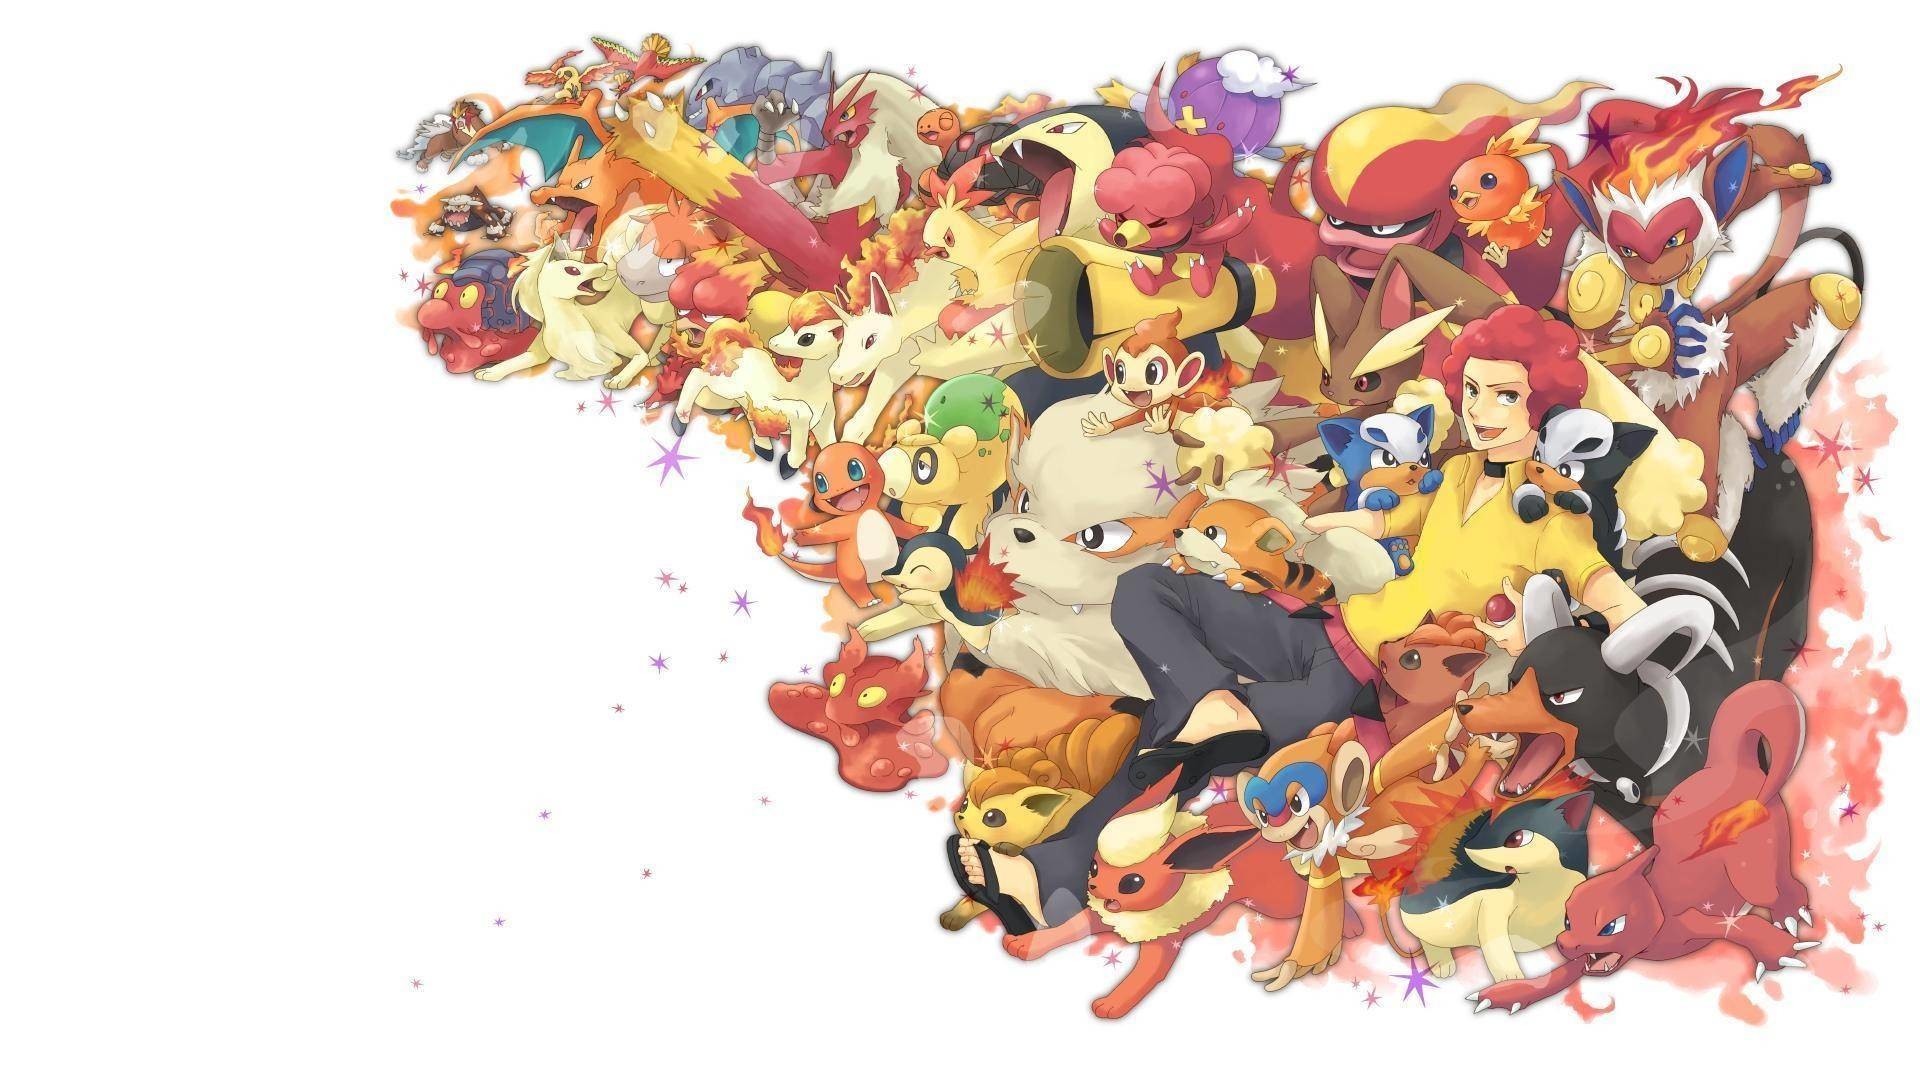 1920x1080 Best 25 Pokemon wallpapers free ideas on Pinterest | Pikachu .